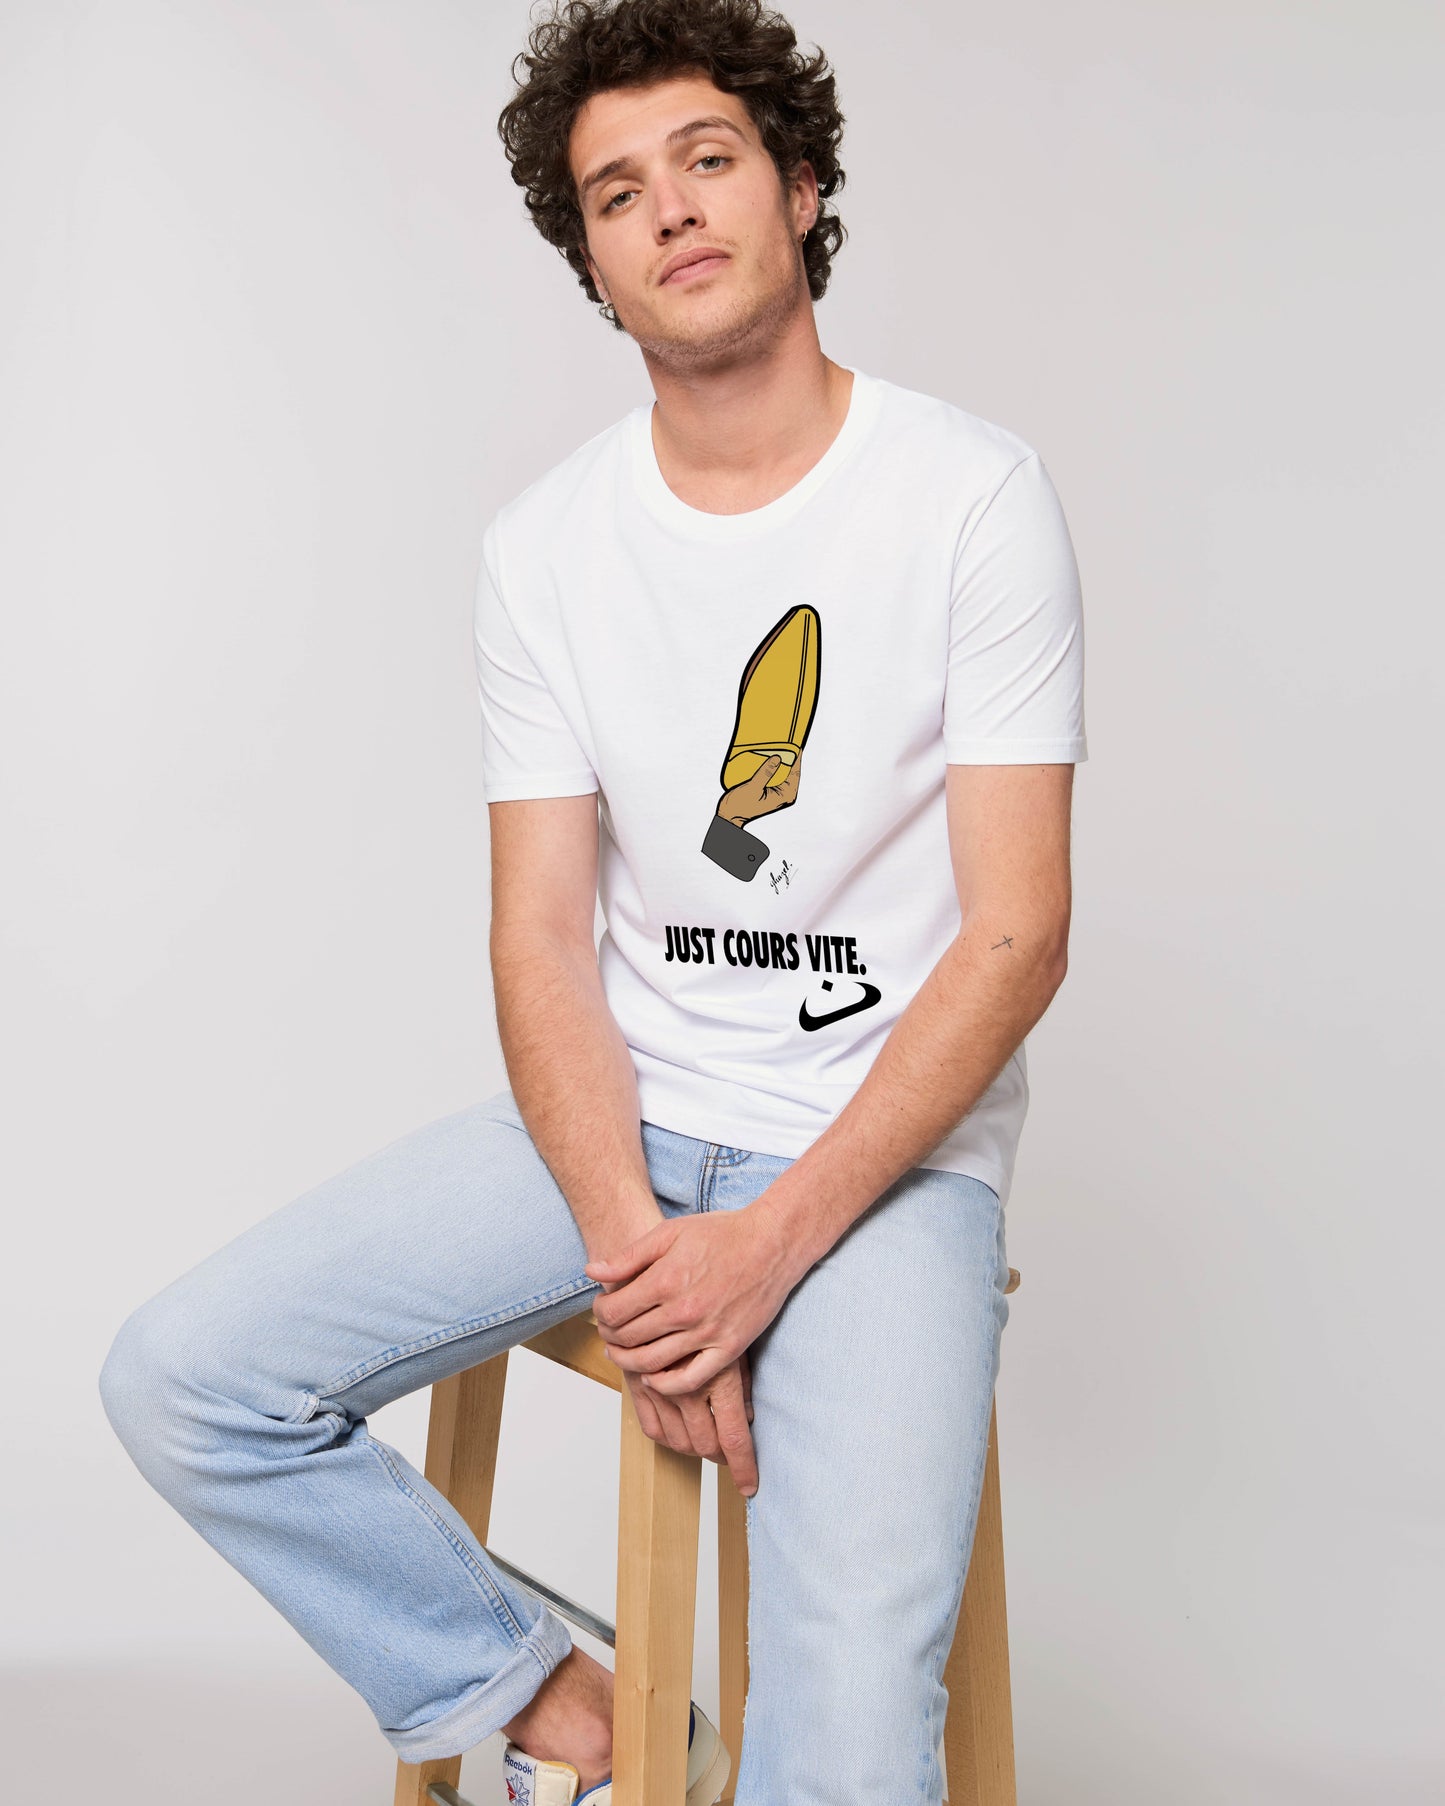 T-shirt manches courtes "Just cours vite" - Ghazel Boutique